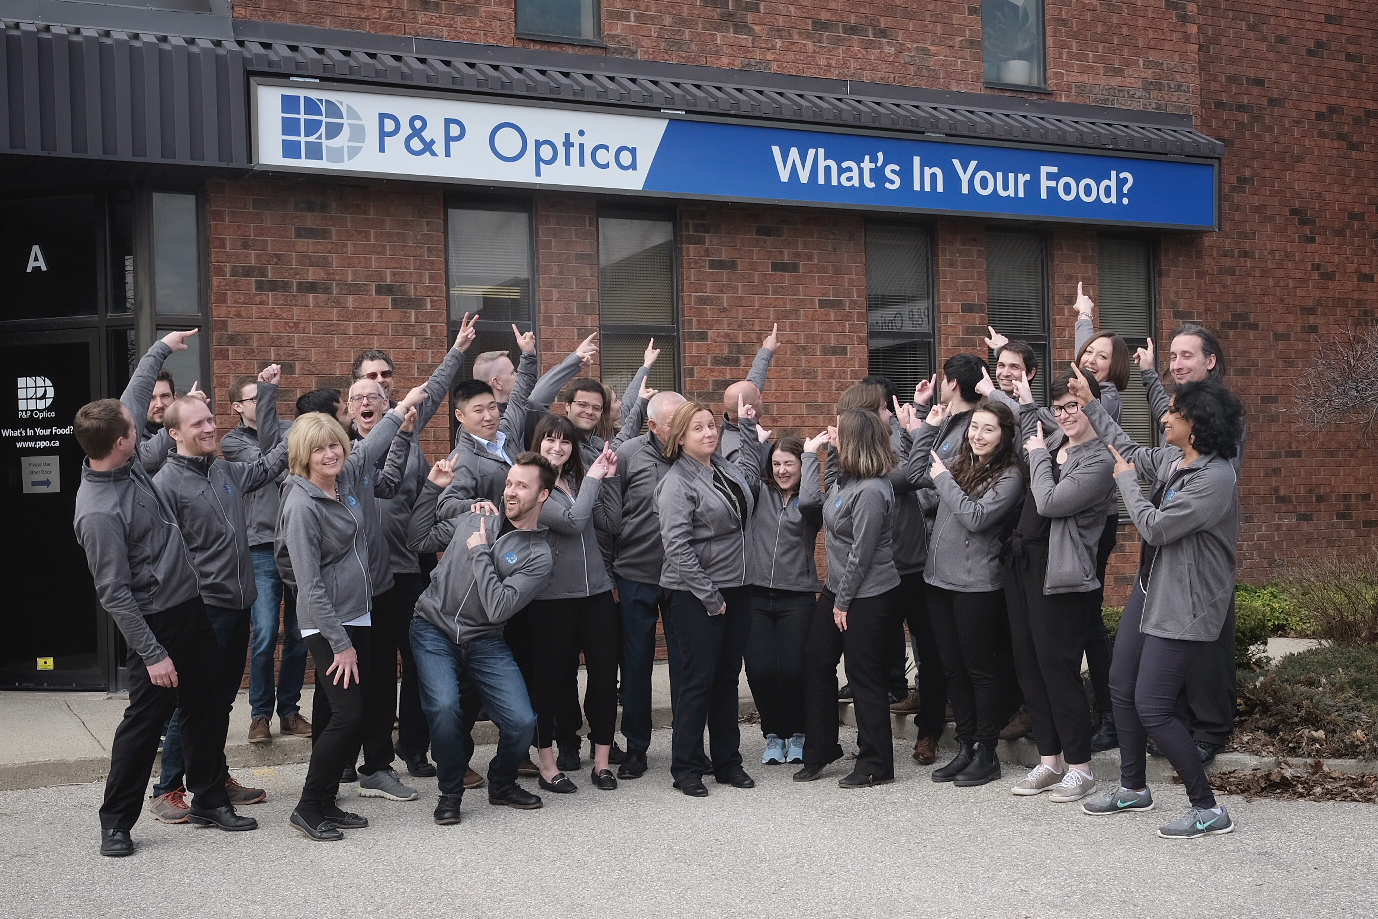 The team at P&P Optica